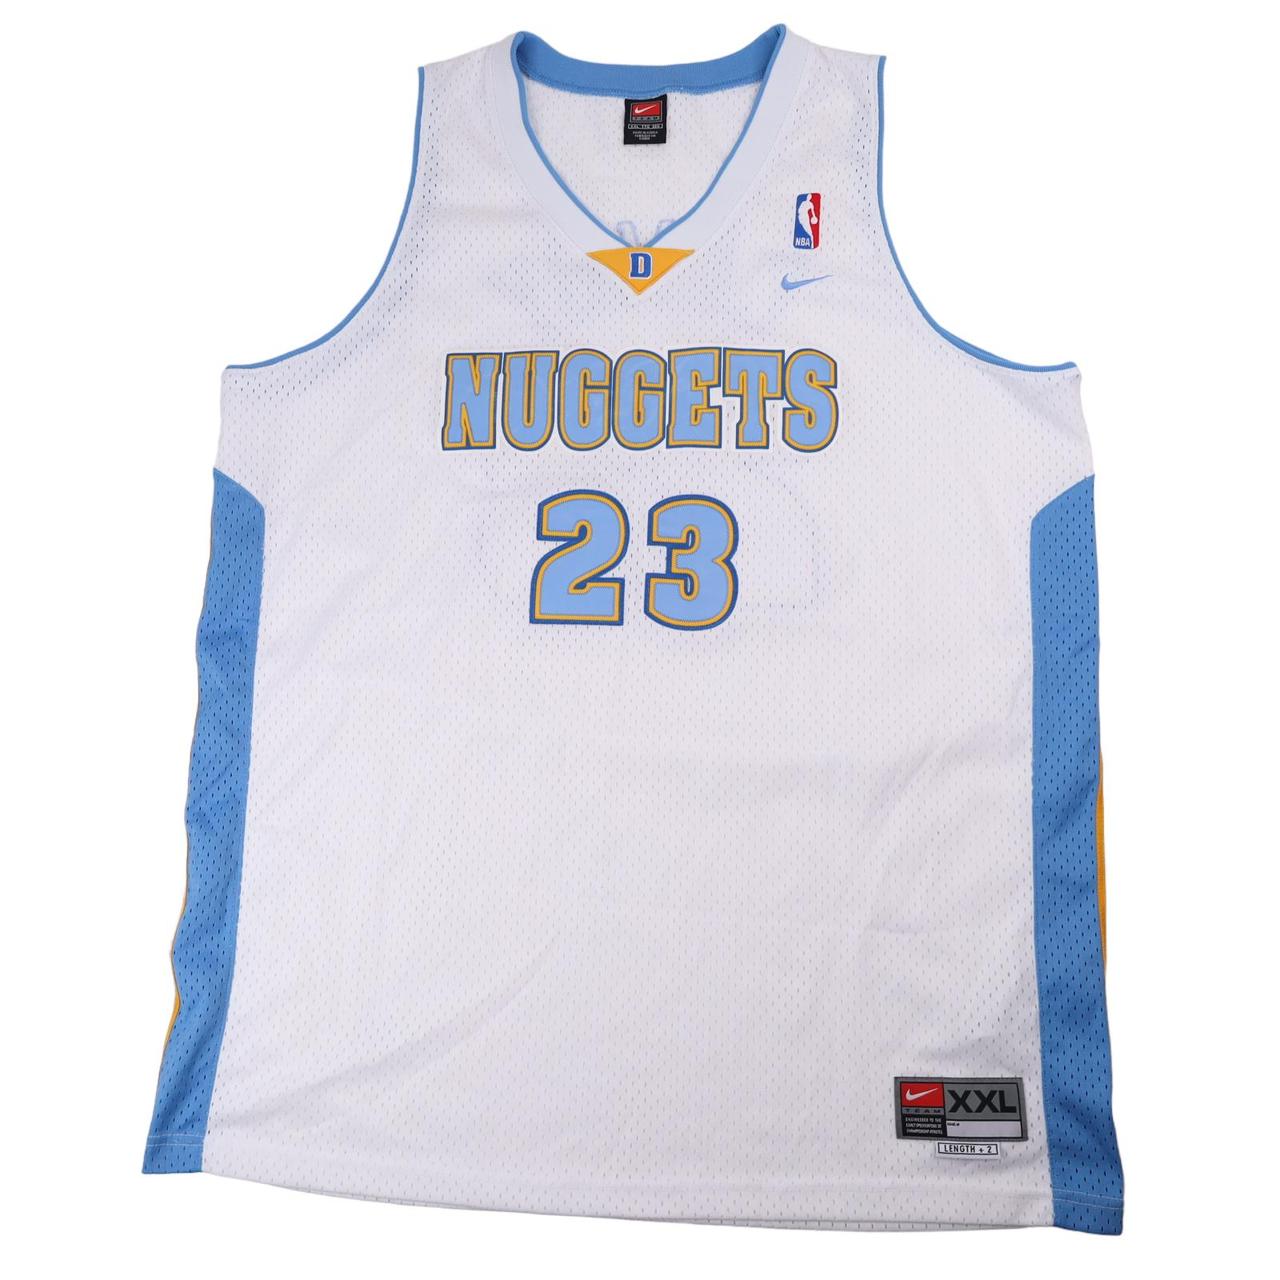 Vintage 1990's Denver Nuggets Basketball Jersey - Depop